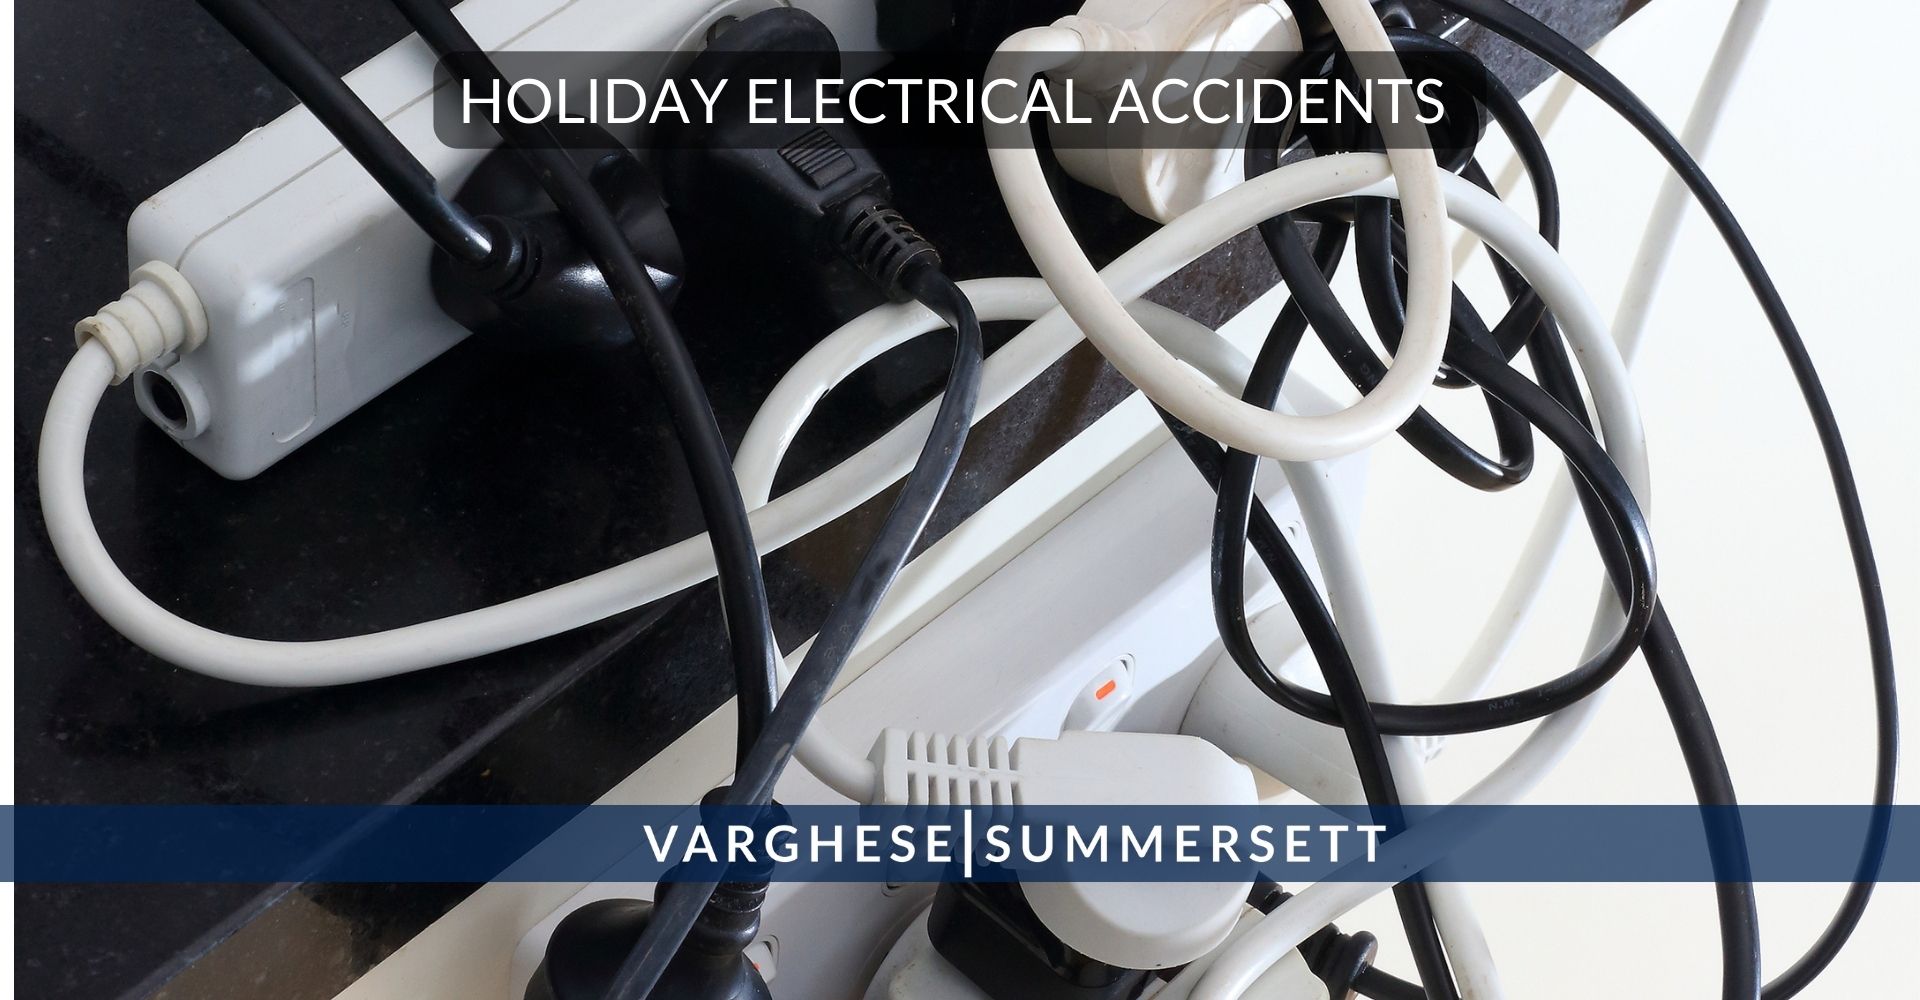 Accidentes eléctricos en vacaciones